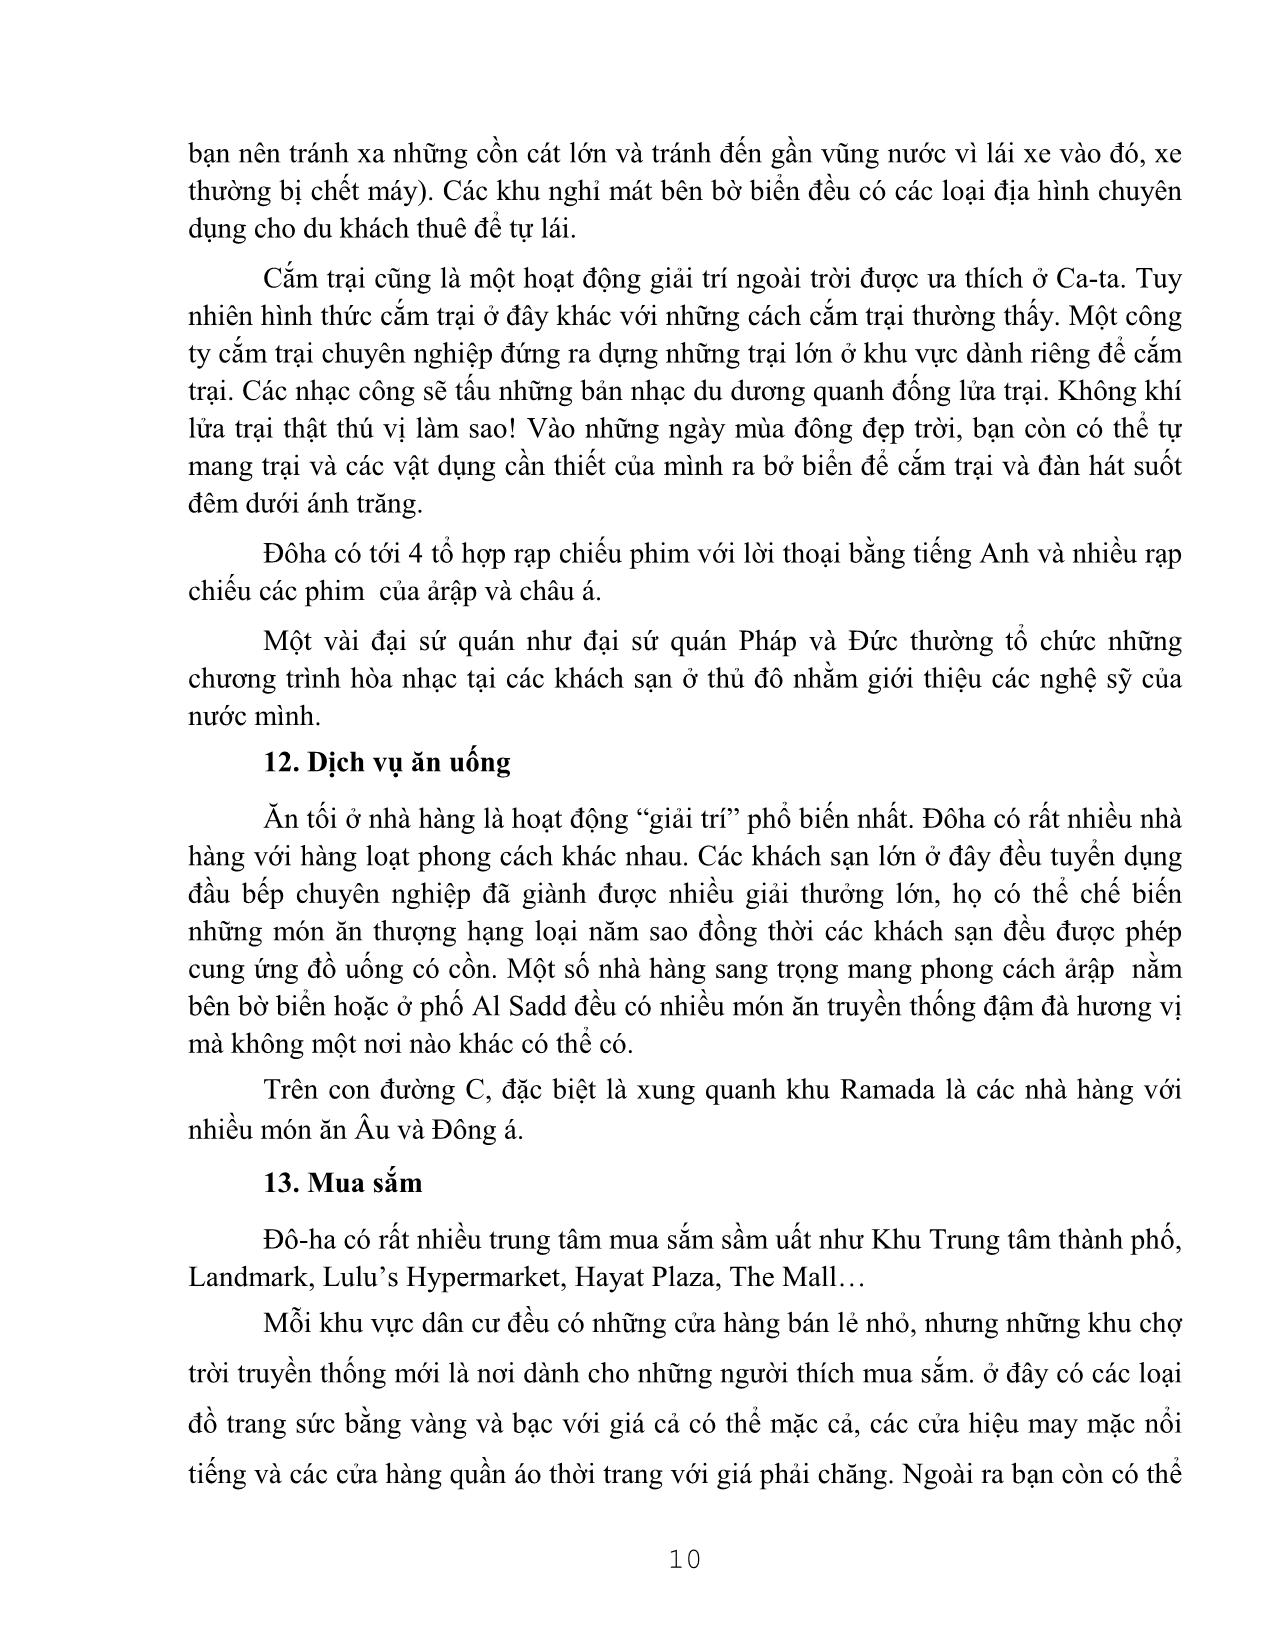 Tài liệu Những hiểu biết cần thiết dùng cho lao động Việt Nam đi làm việc tại Ca-ta trang 10